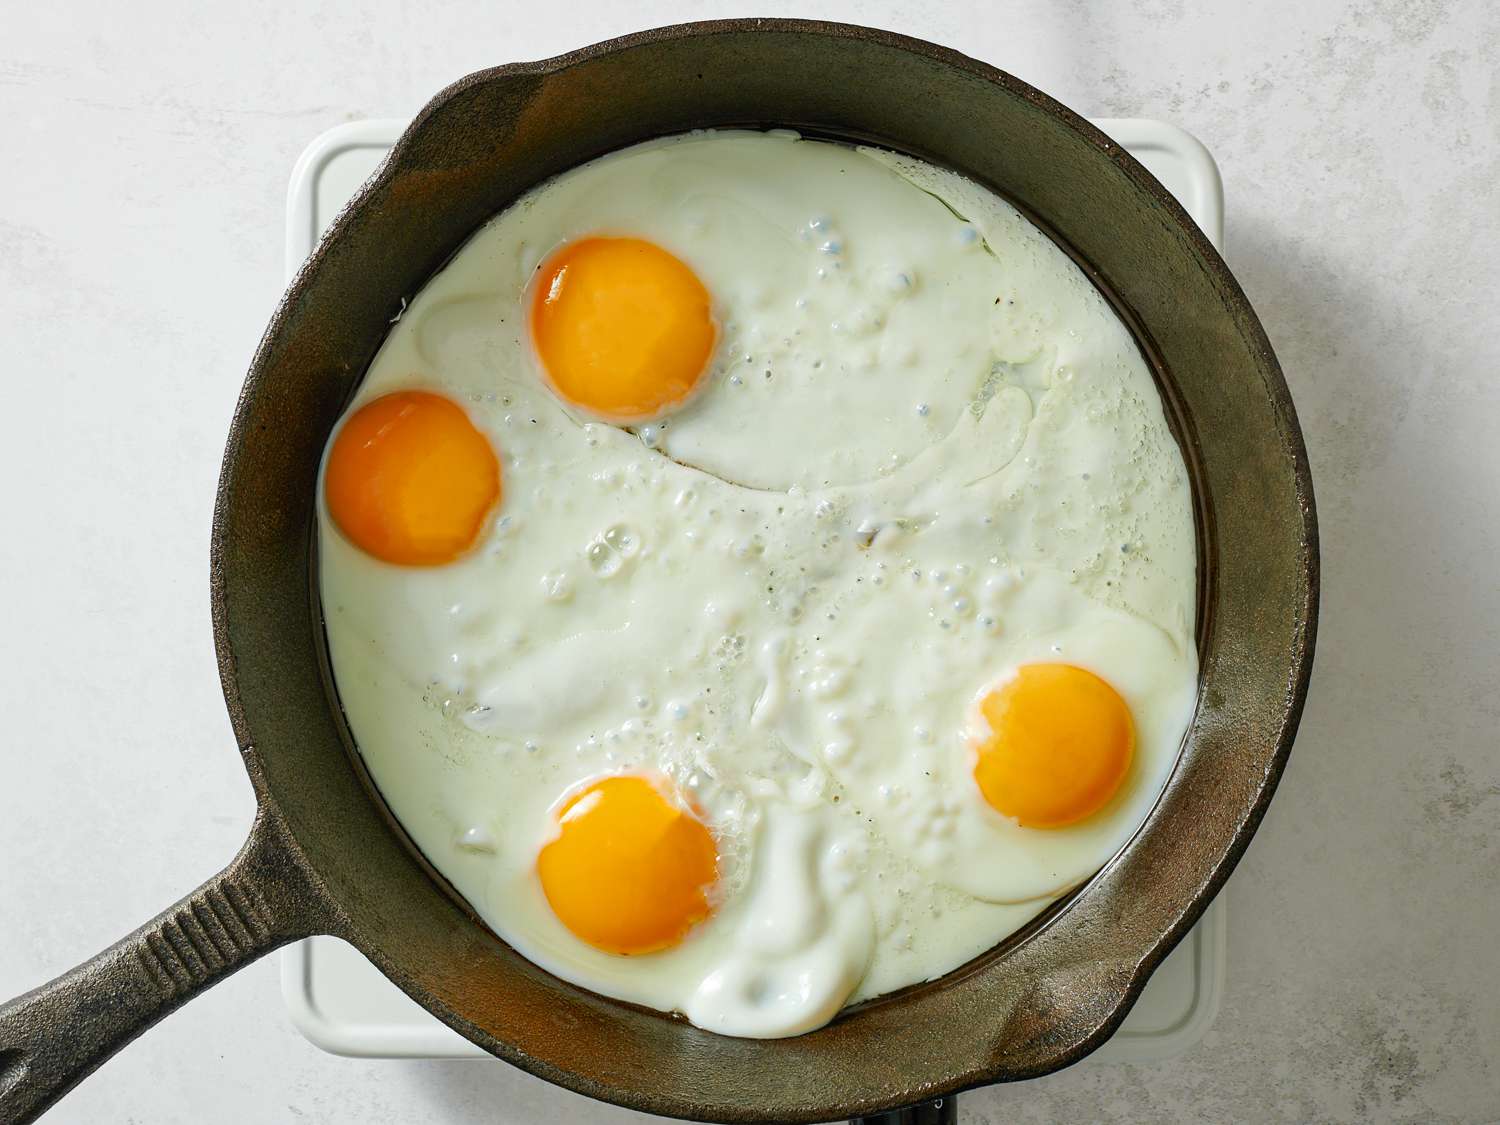 四个鸡蛋在铸铁煎锅里煮。蛋白凝固了，而蛋黄是完整的，仍然是流动的。